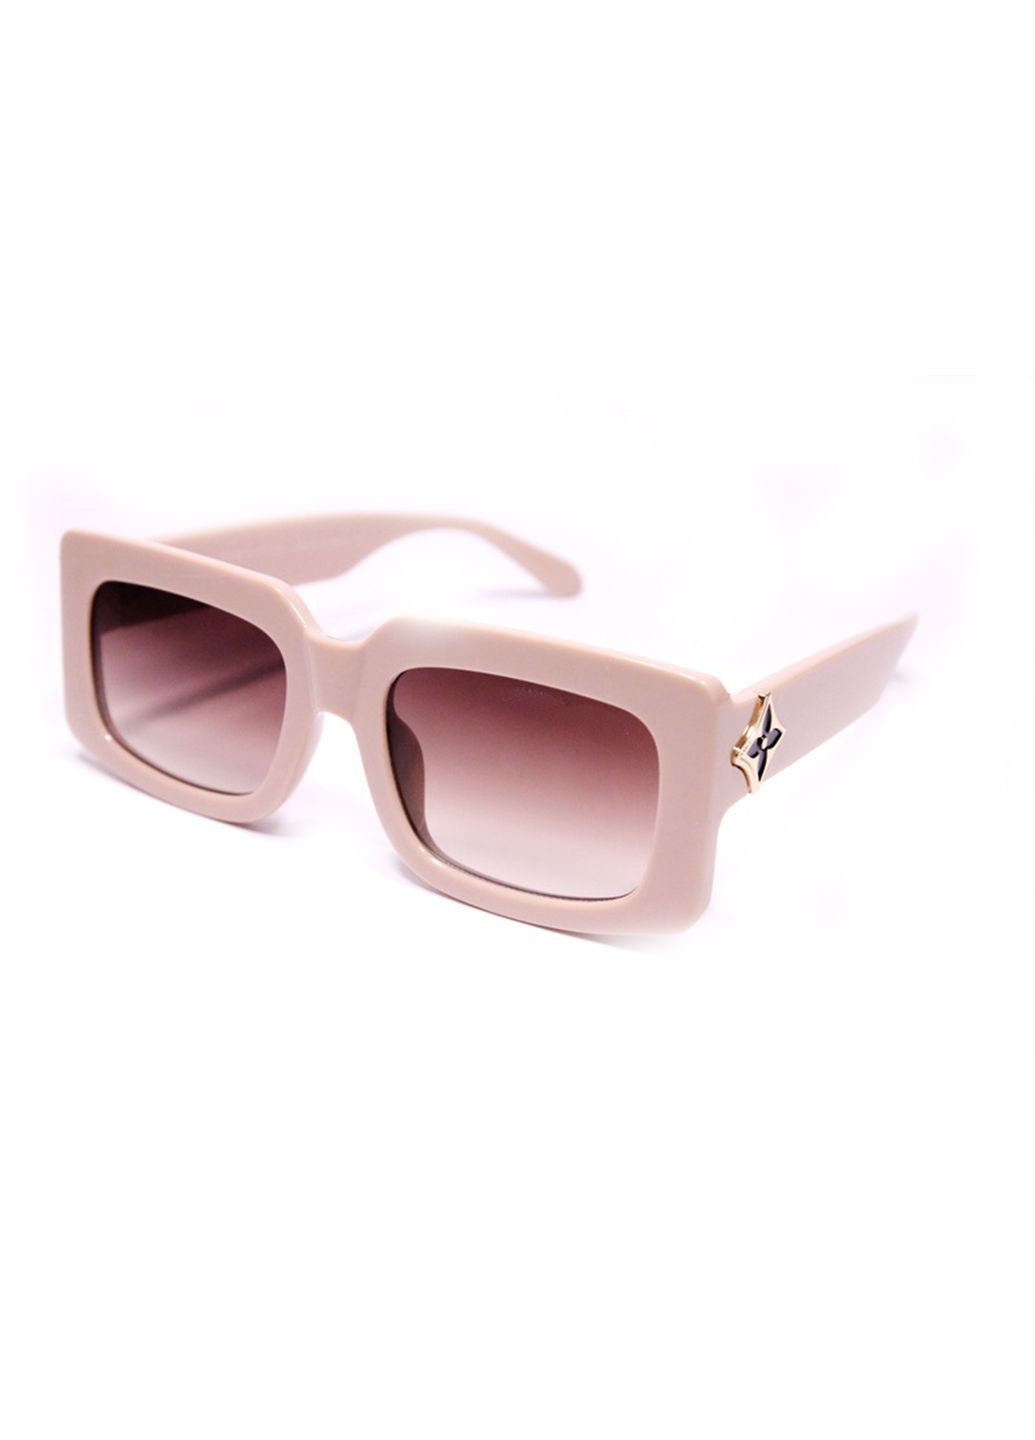 Солнцезащитные очки LV8215 100269 Merlini розовые